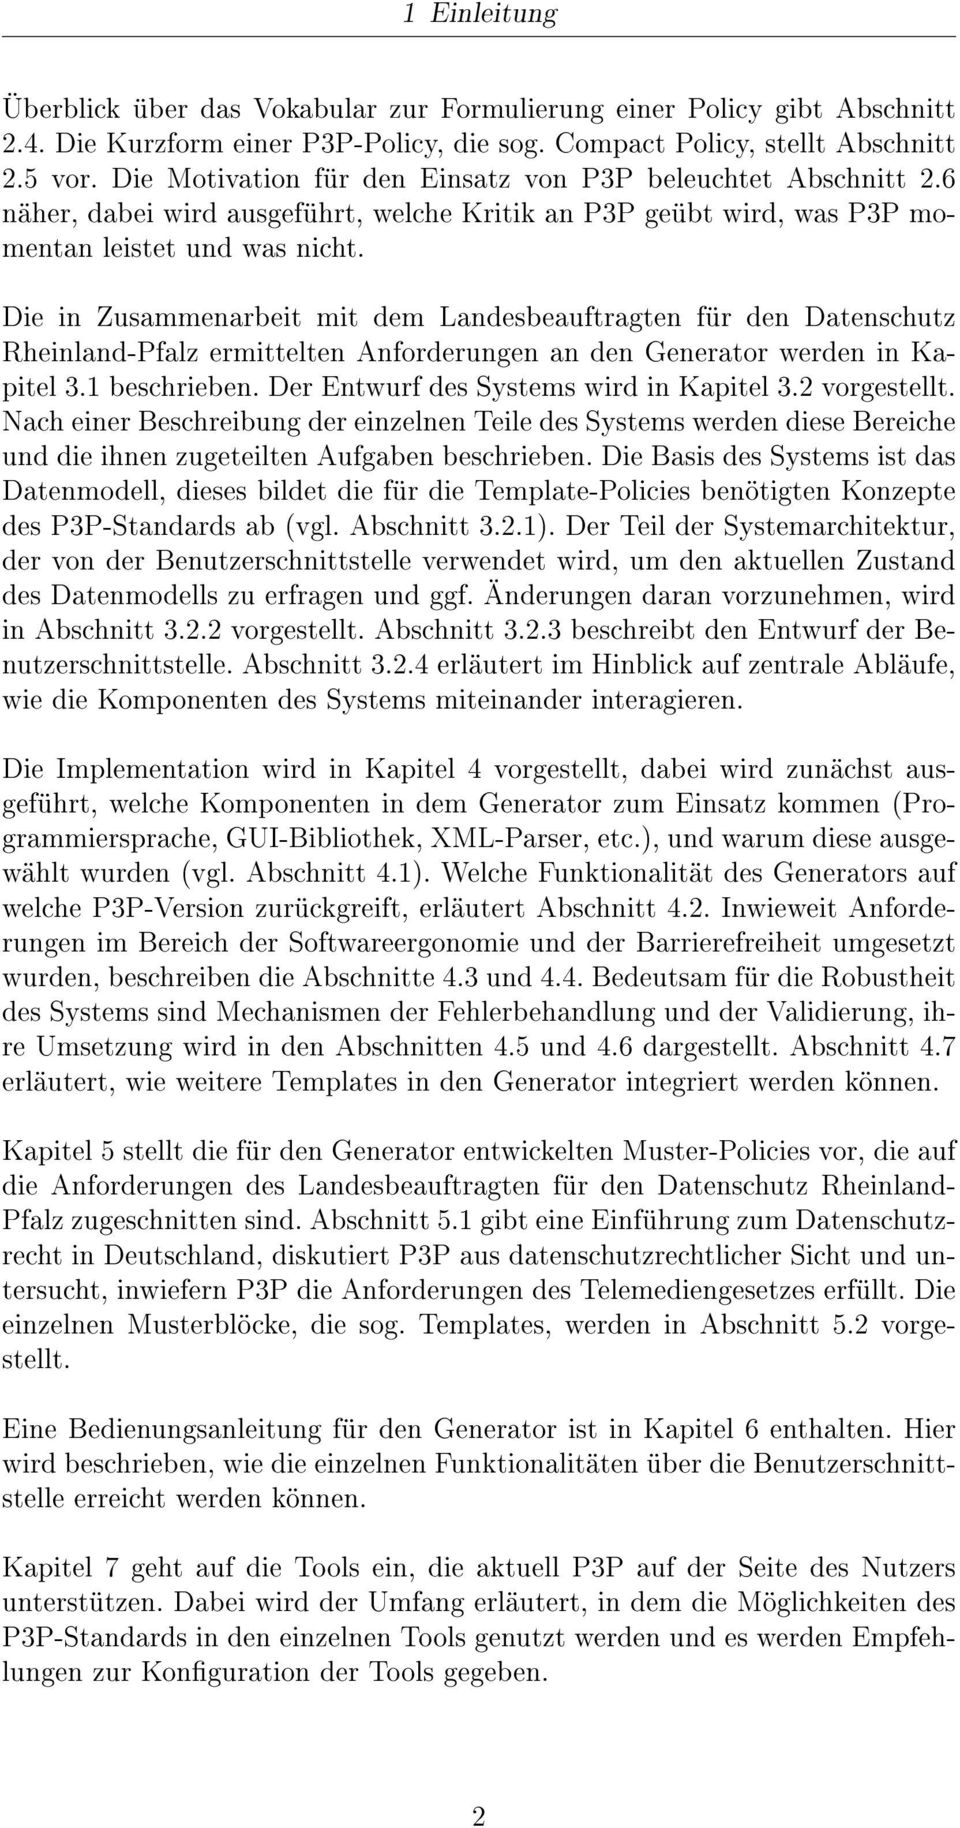 Die in Zusammenarbeit mit dem Landesbeauftragten für den Datenschutz Rheinland-Pfalz ermittelten Anforderungen an den Generator werden in Kapitel 3.1 beschrieben.